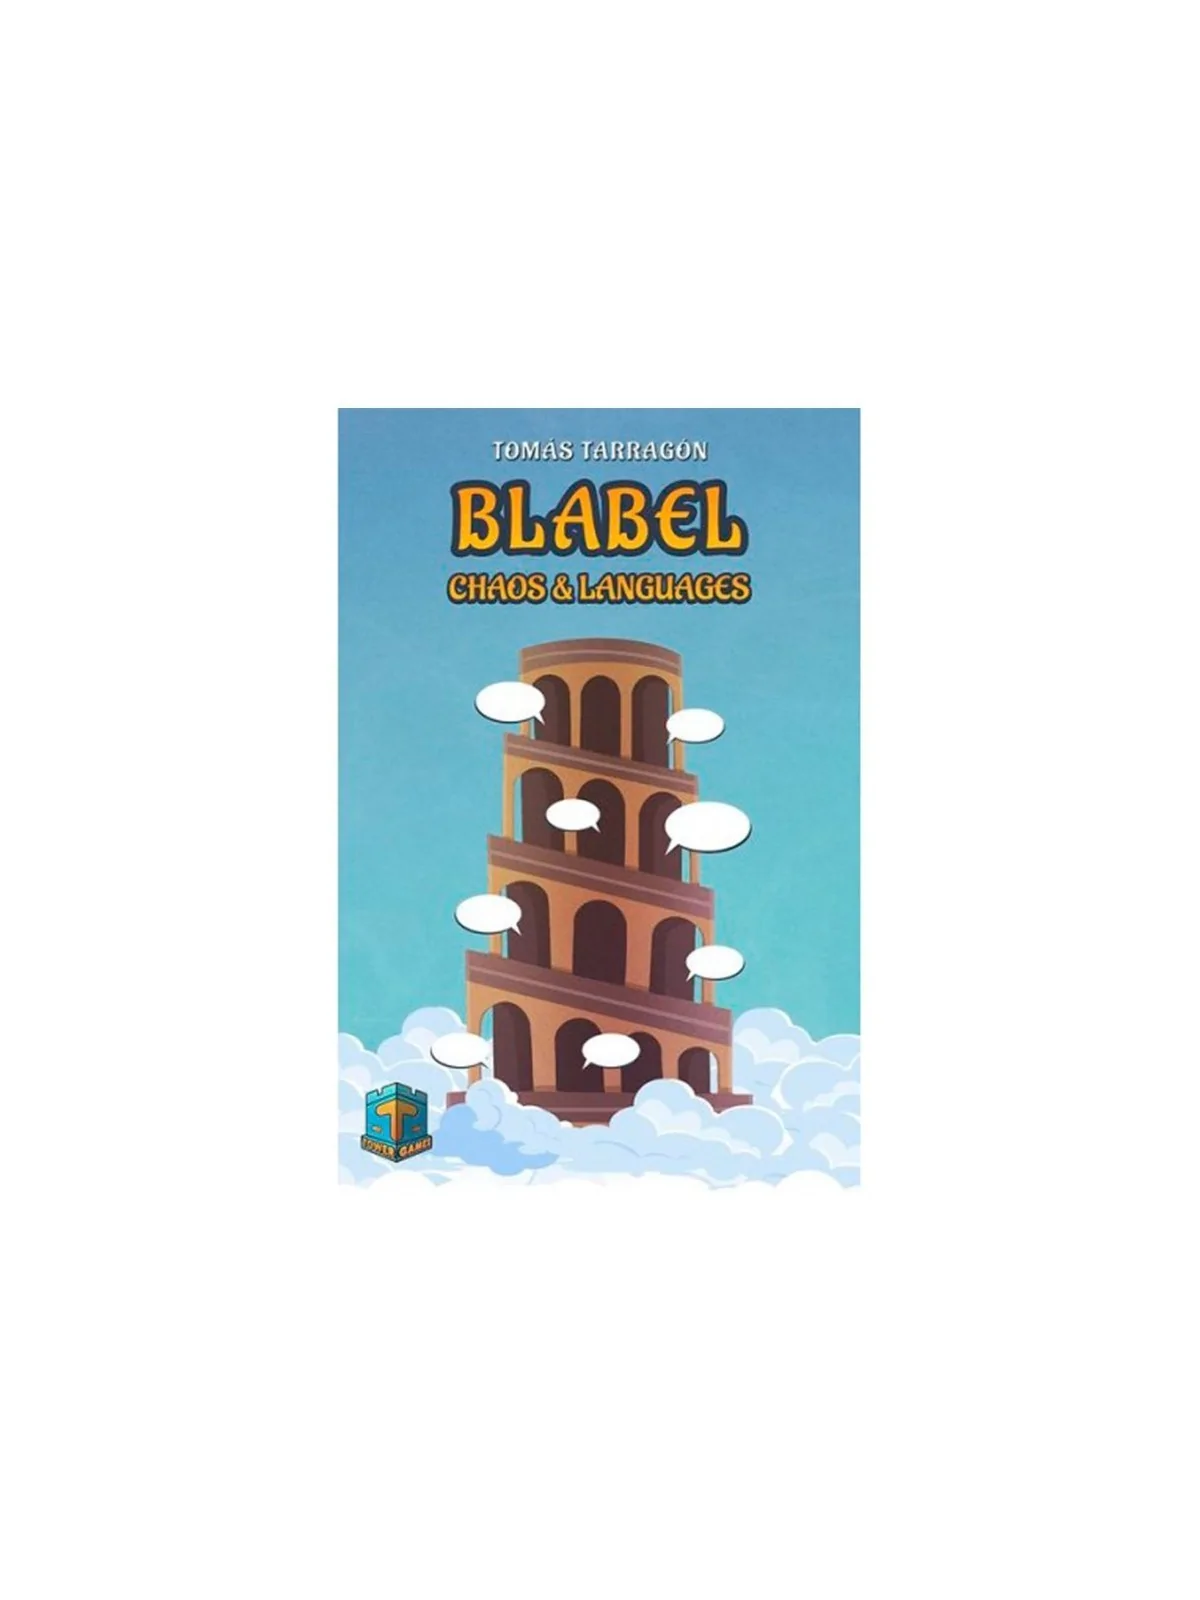 Comprar Blabel barato al mejor precio 22,50 € de T-Tower Games